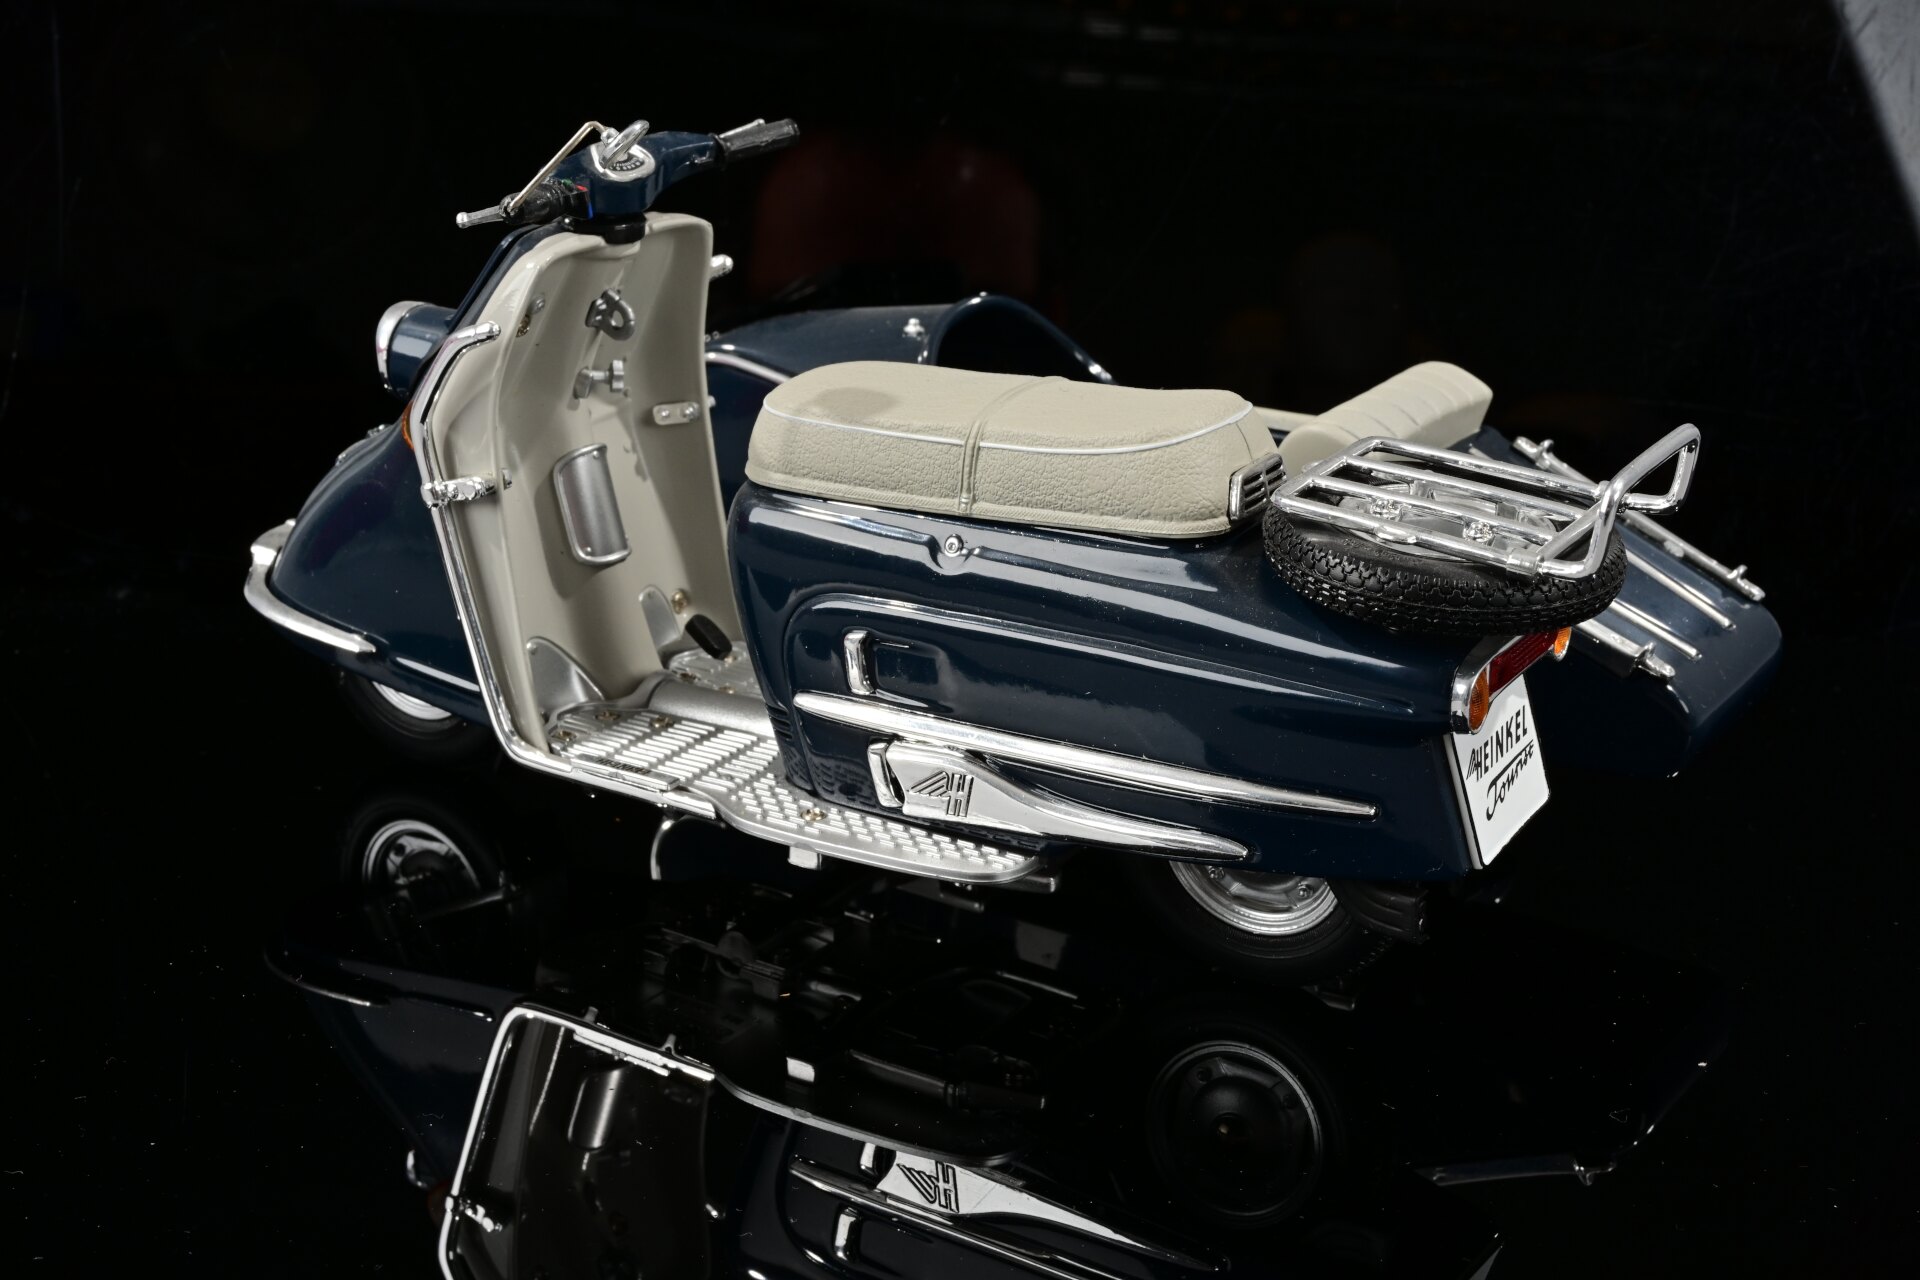 4 x Motorrad mit Beiwagen, Maßstab 1:10, verschiedene Farben und Modelle, 20. / 21. Jahrhundert, sc - Image 17 of 17